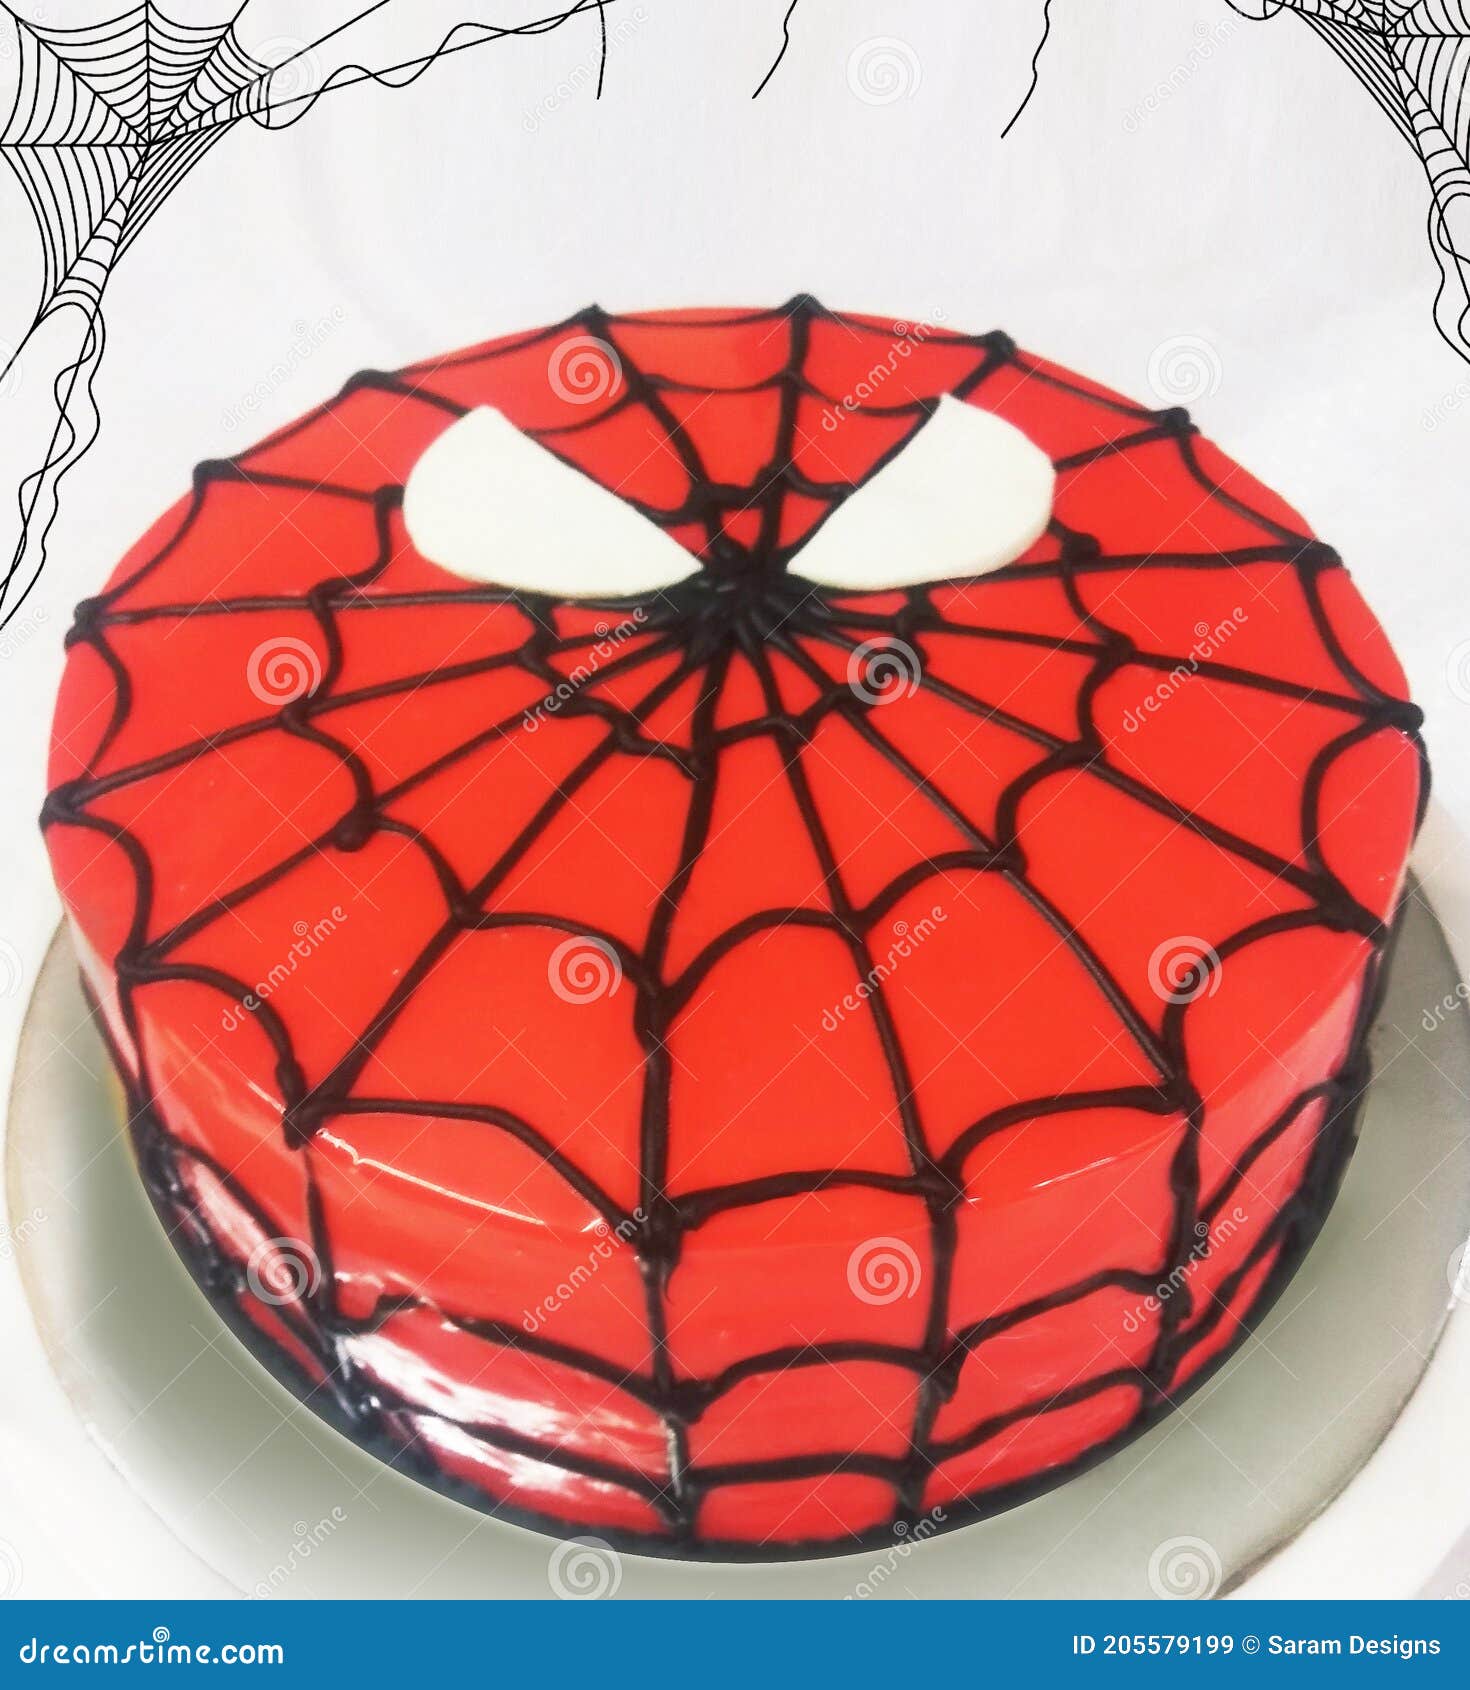 Superhero Birthday Cake | Mayhem in the Kitchen!